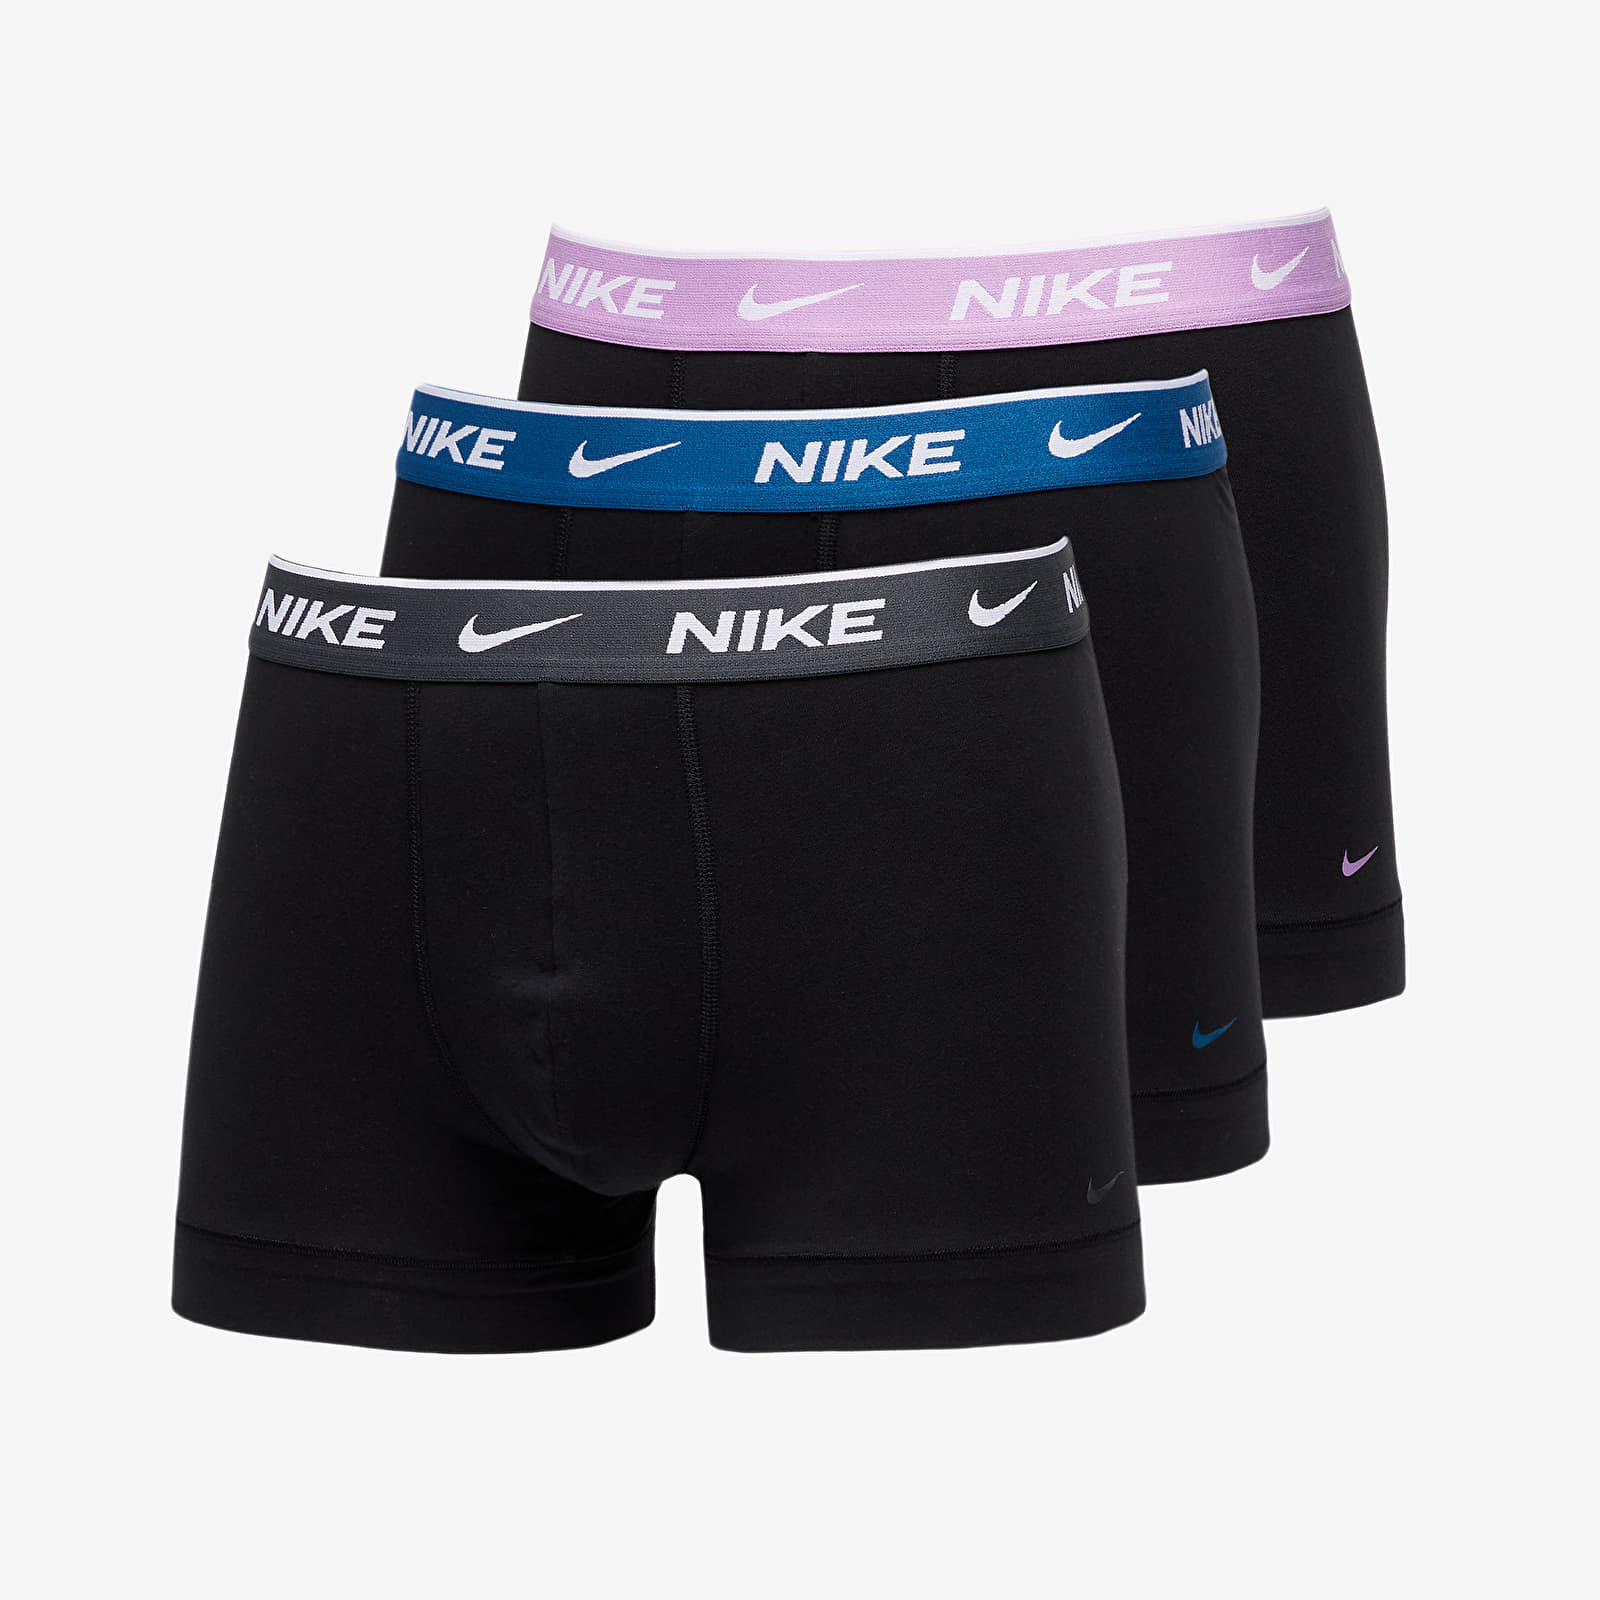 Boxer shorts Nike Trunk 3-Pack Black